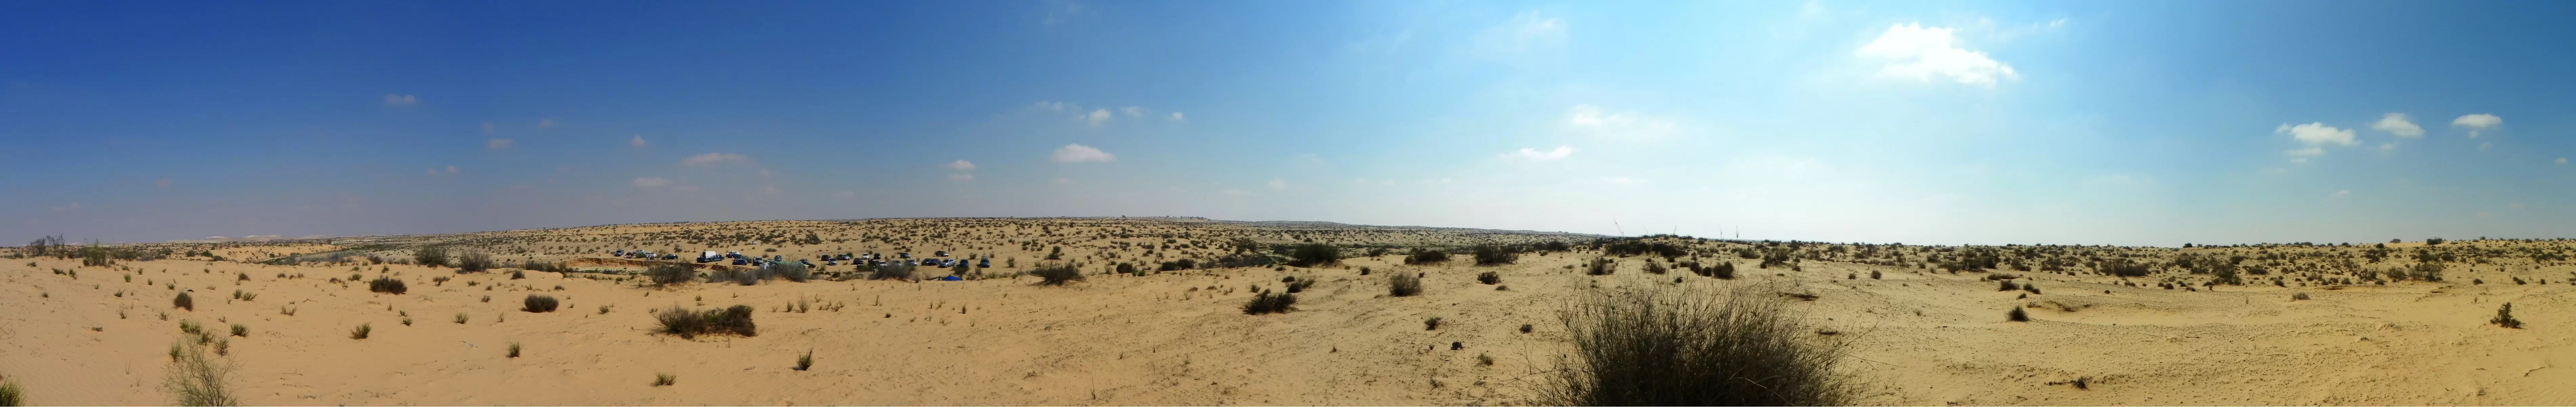 חולות המדבר - משה יפה - תמונות נוף פנורמי  - מק''ט: 156851